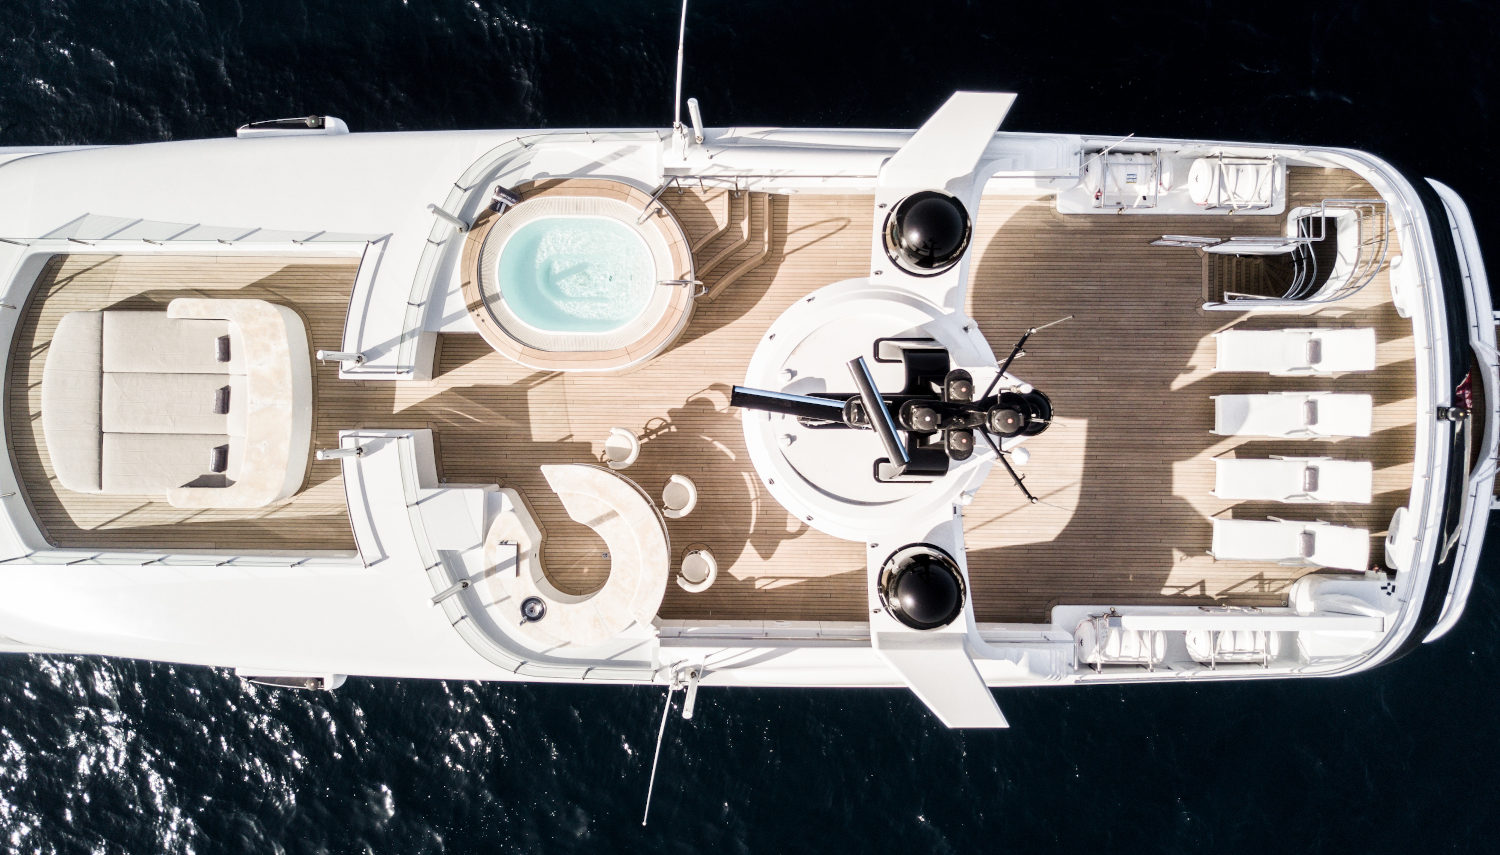 Vripack - Amadeus-I - Eagle view - Sundeck - Jacuzzi and sunbathing area - Super yacht for charter